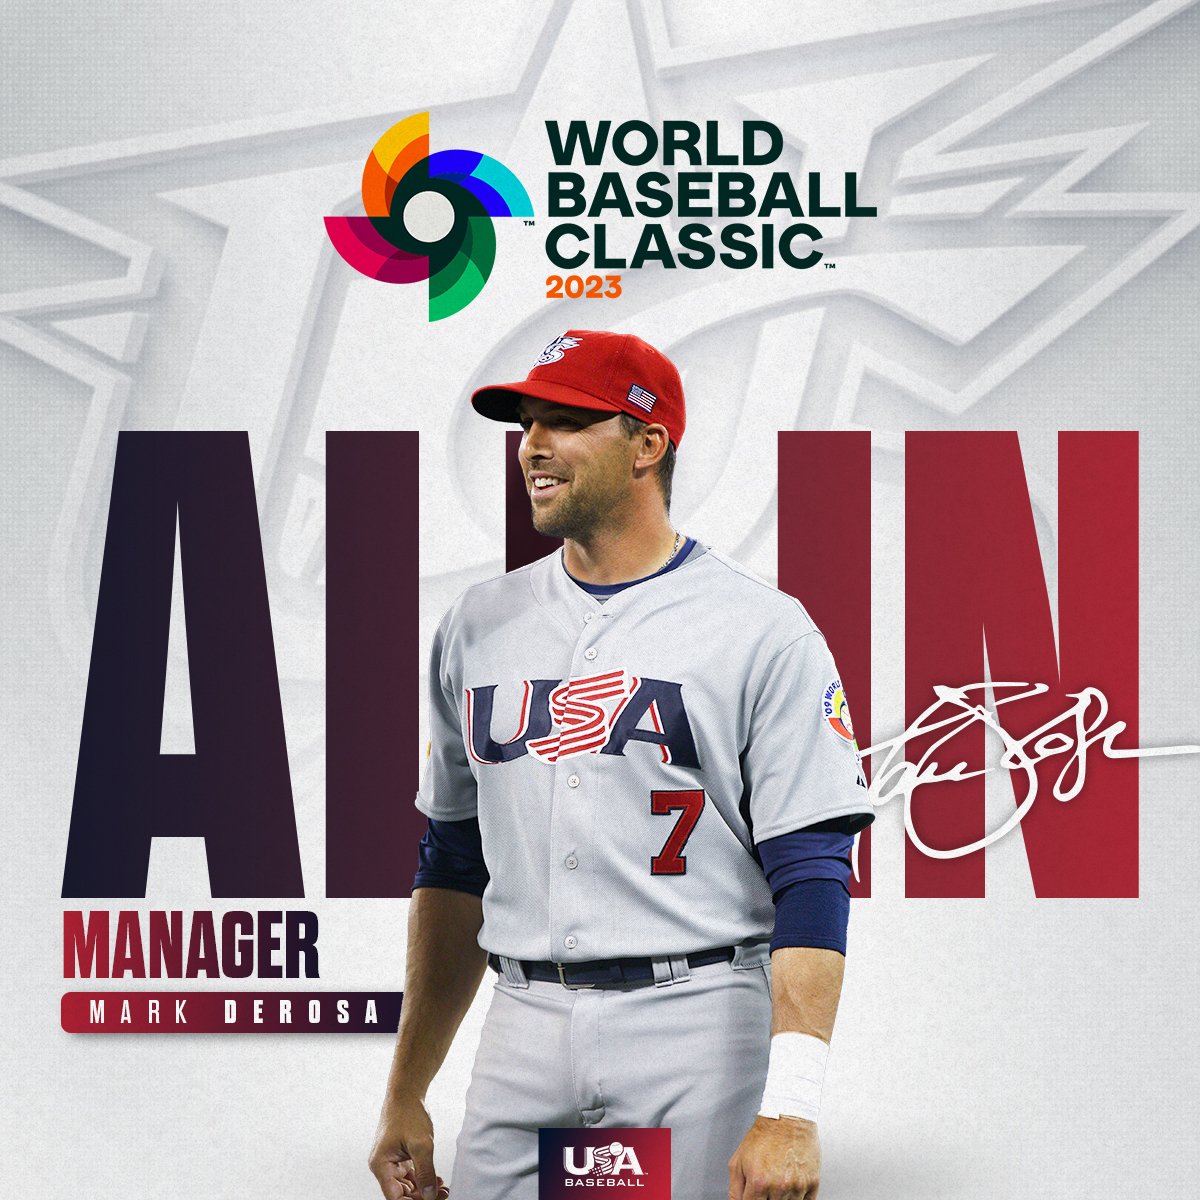 Mark DeRosa named Manager for Team USA in 2023 World Baseball